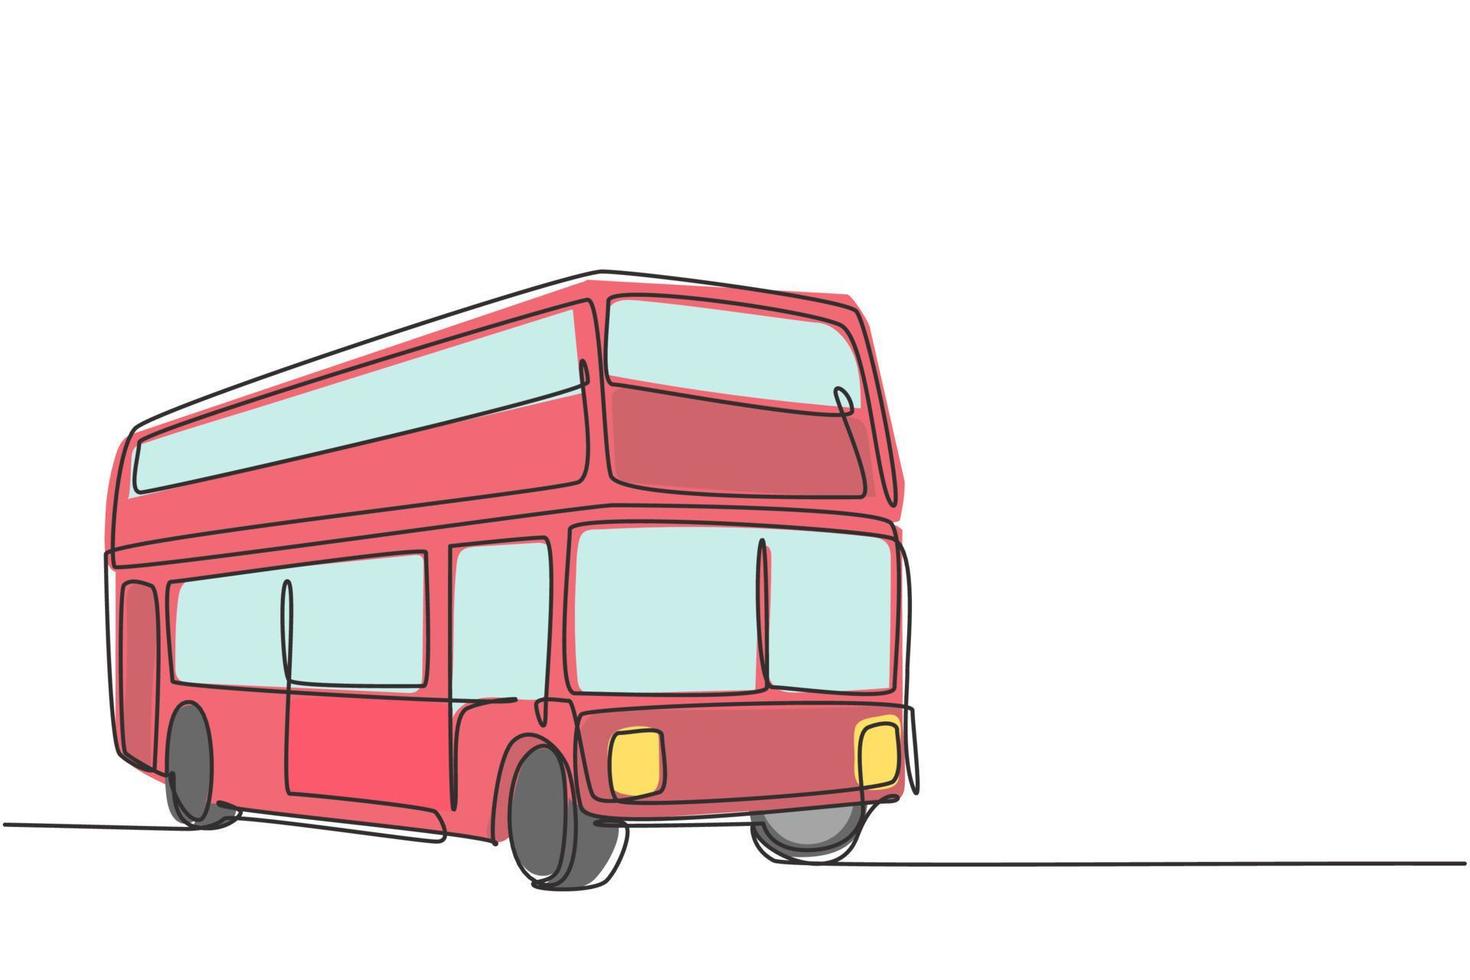 Los autobuses de dos pisos de dibujo continuo de una línea llevan a los turistas por la ciudad para disfrutar del paquete turístico de la ciudad vieja. un prometedor negocio de transporte. Ilustración gráfica de vector de diseño de dibujo de una sola línea.